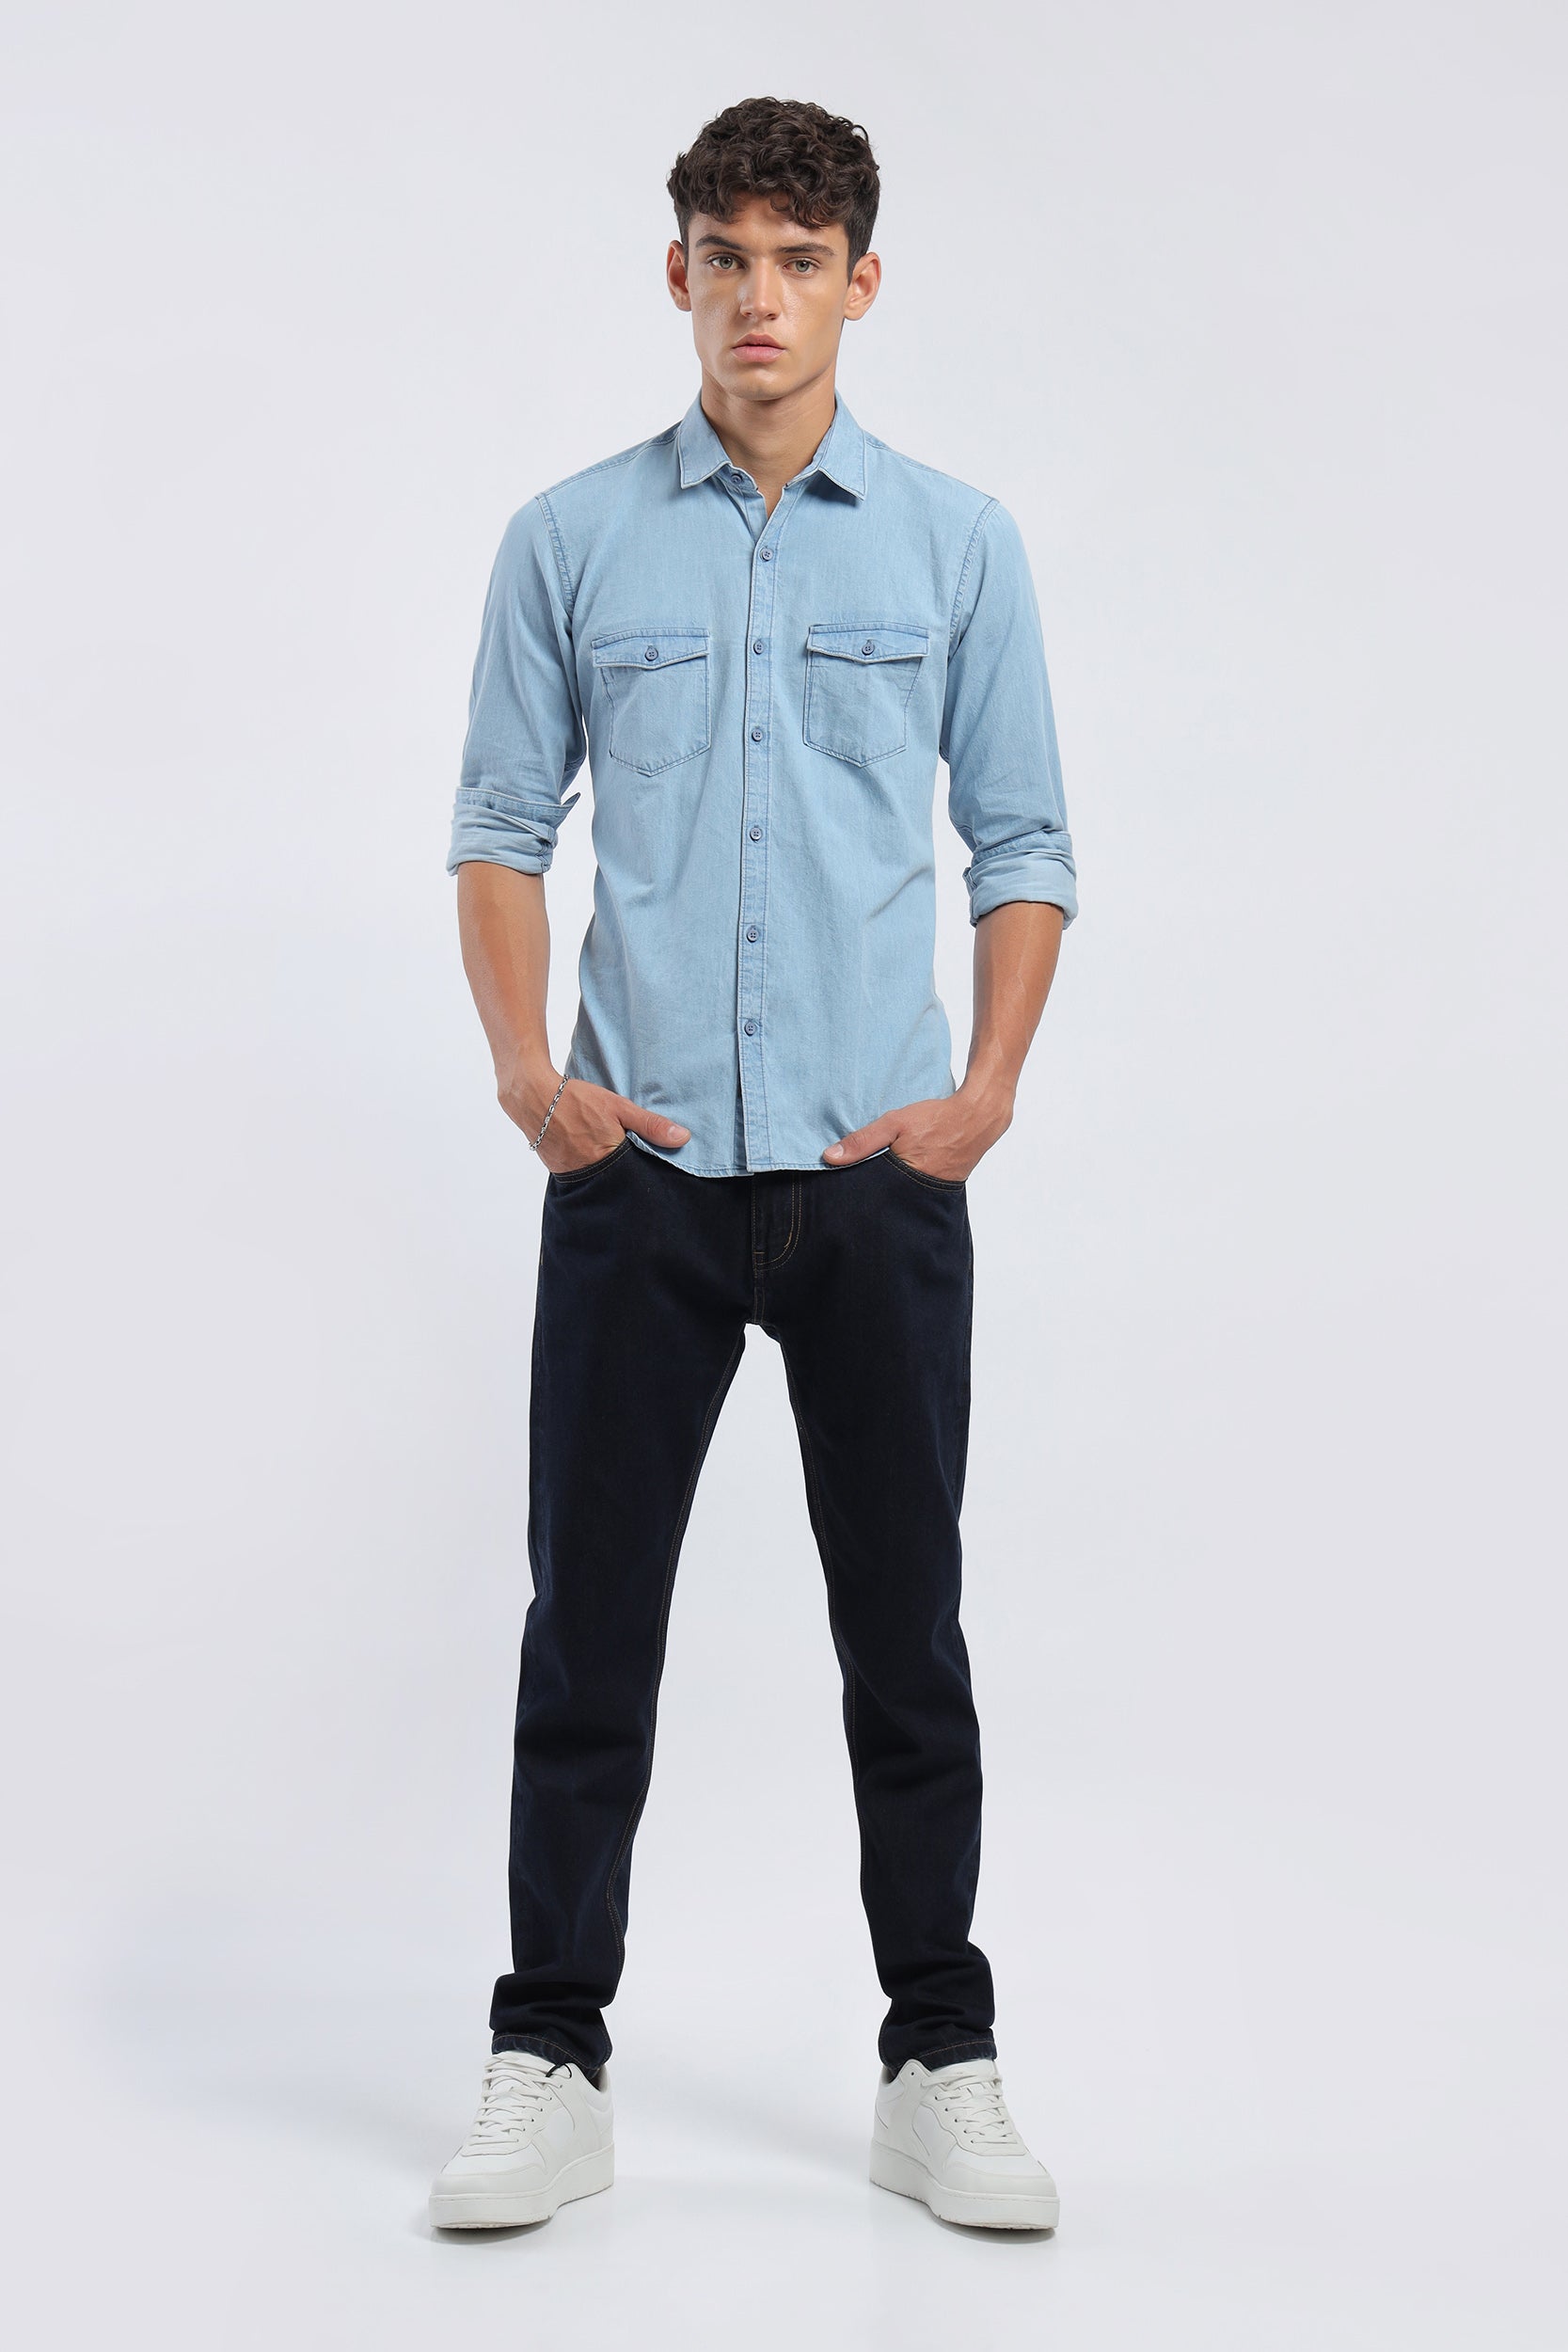 Light Blue Pockets Button Up Denim Shirt | Think Pink Boutique